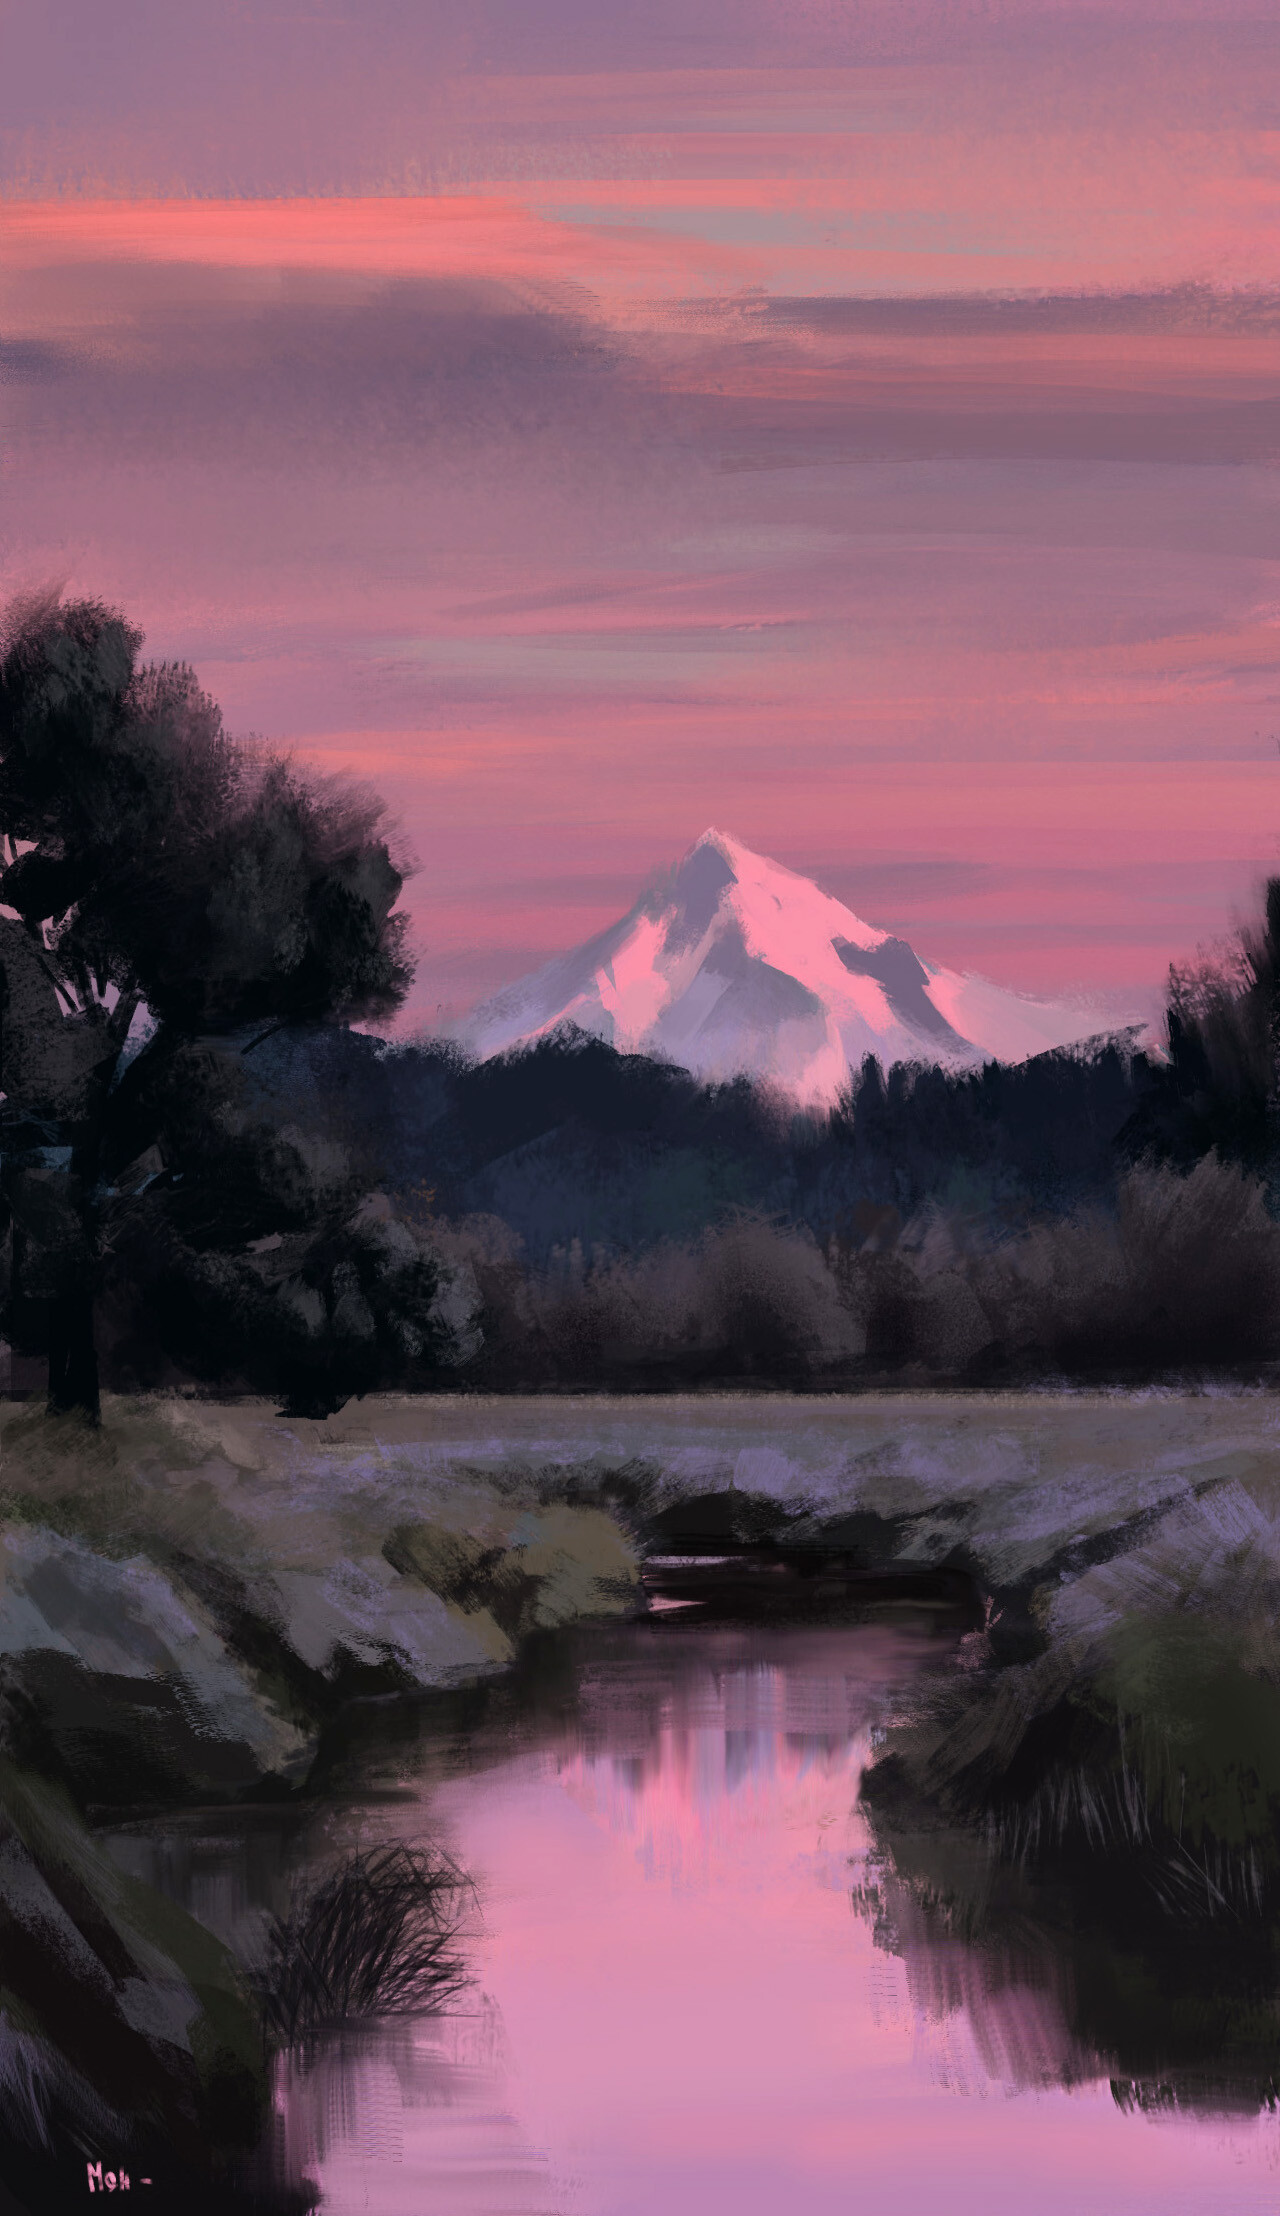 Free HD art, paints, landscape, mountains